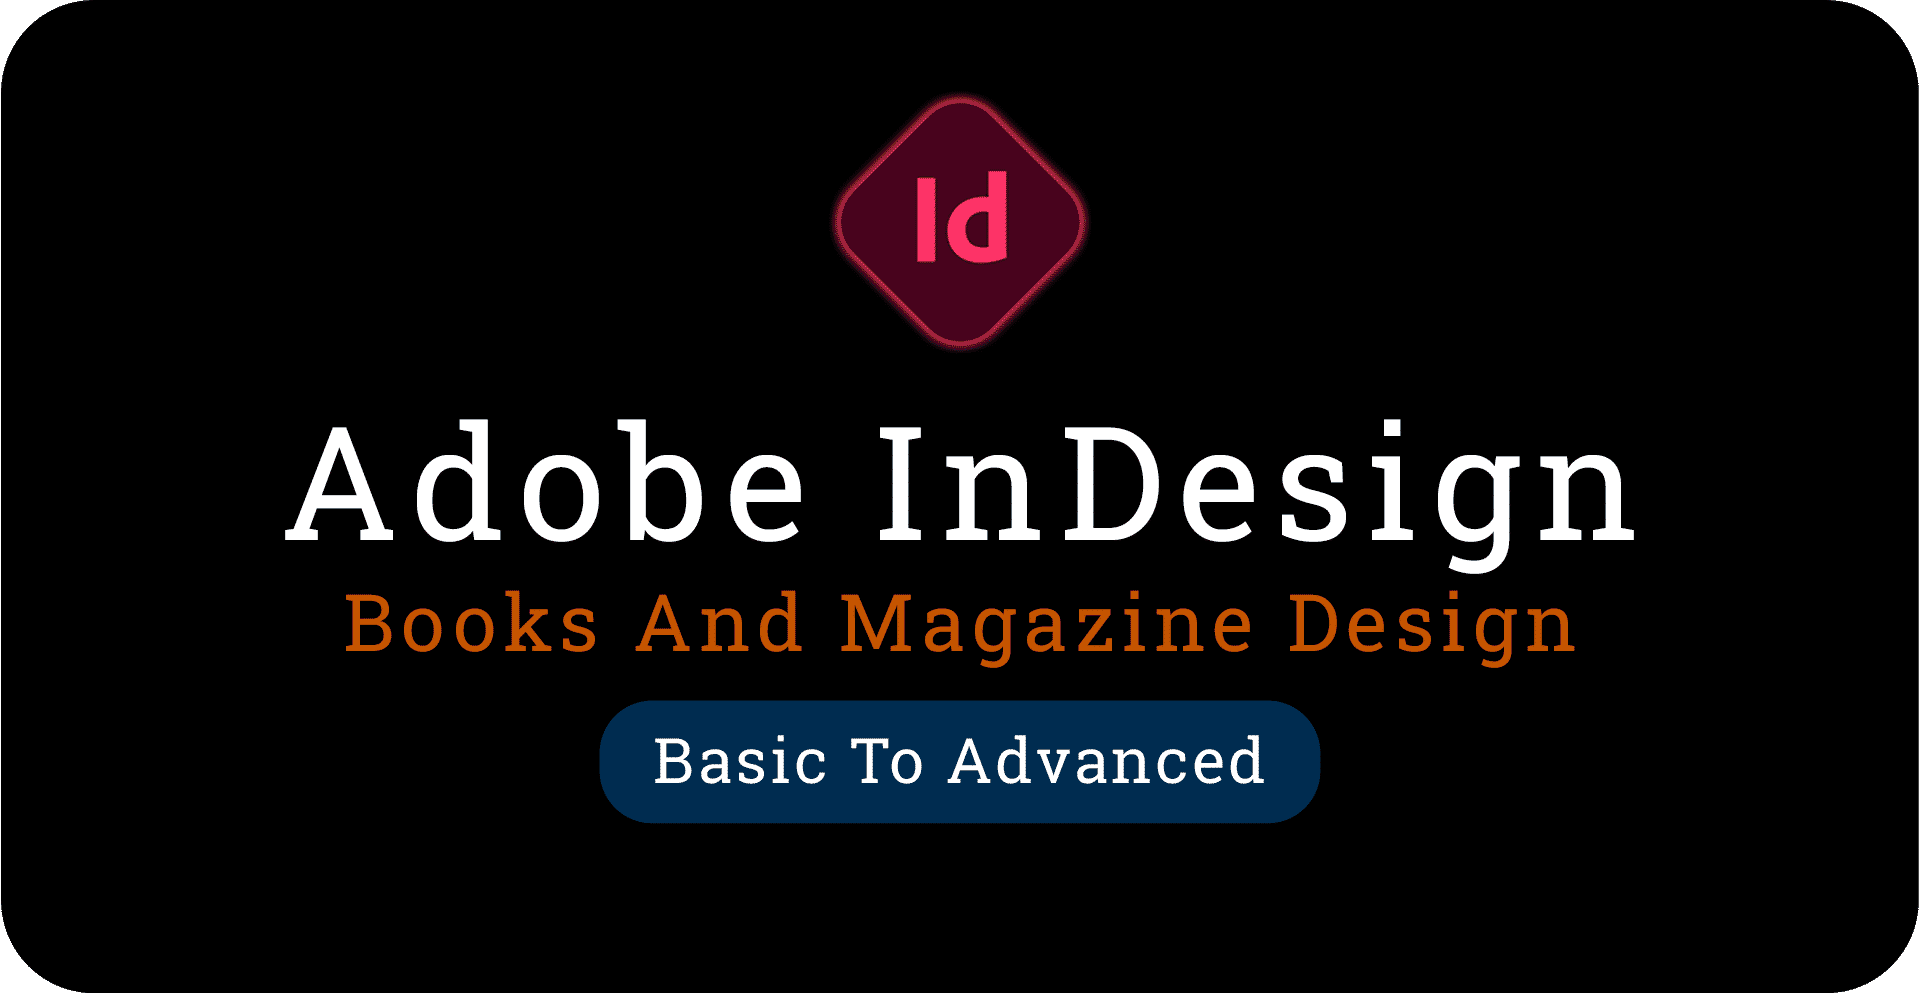 Adobe InDesign Essential Training